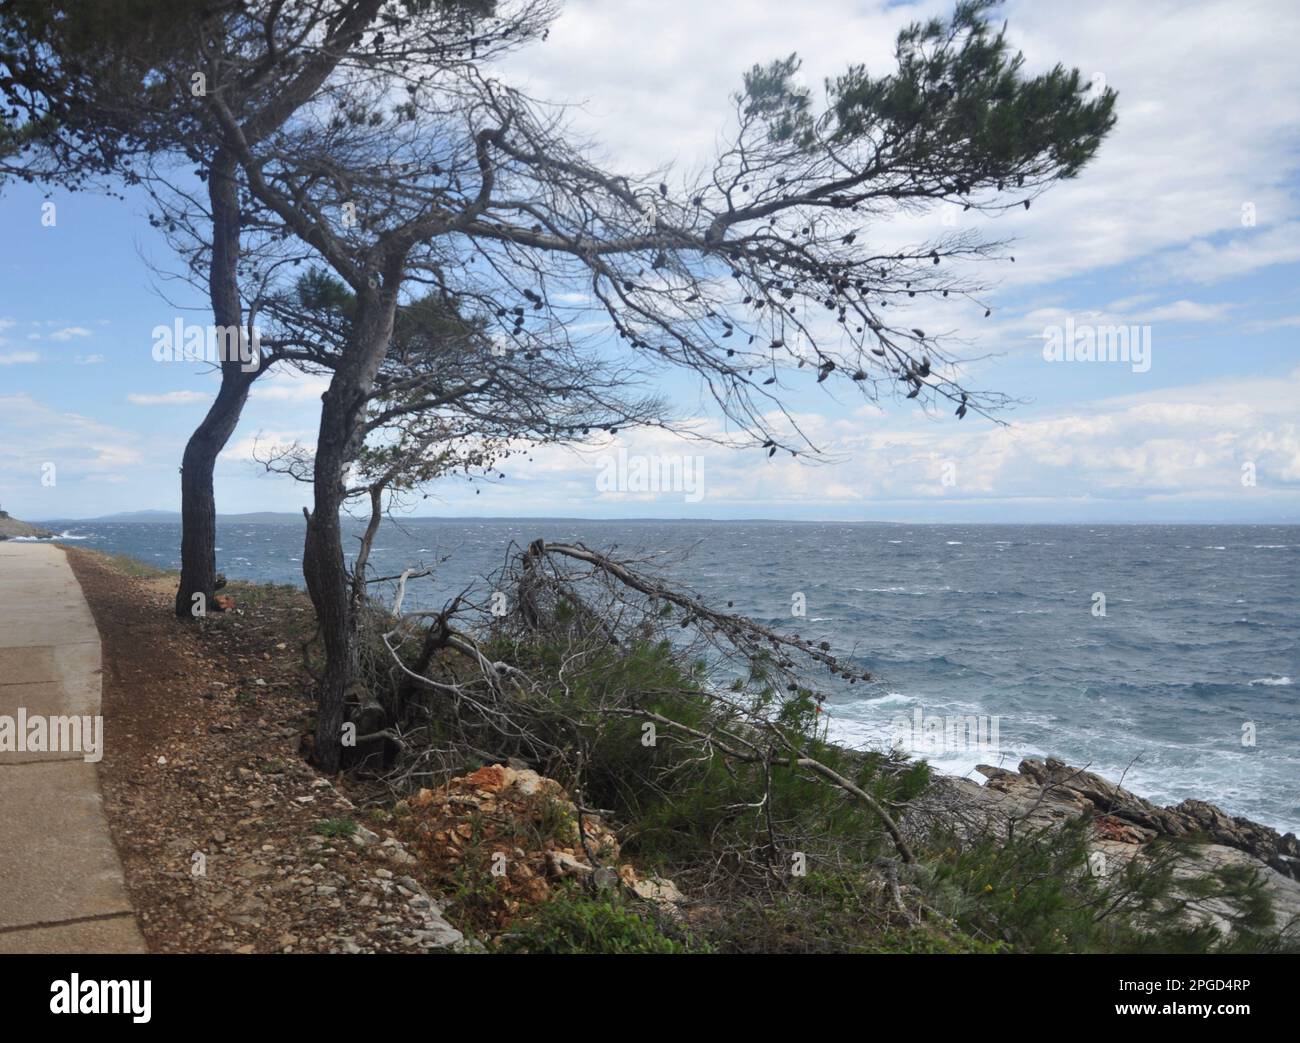 Mit Blick auf den immergrünen Zweig über dem Meer. Grüner Kiefernbaum über dem blauen Meer. Wunderschöner kroatischer Kiefernzweig mit grünen Zapfen. Stockfoto